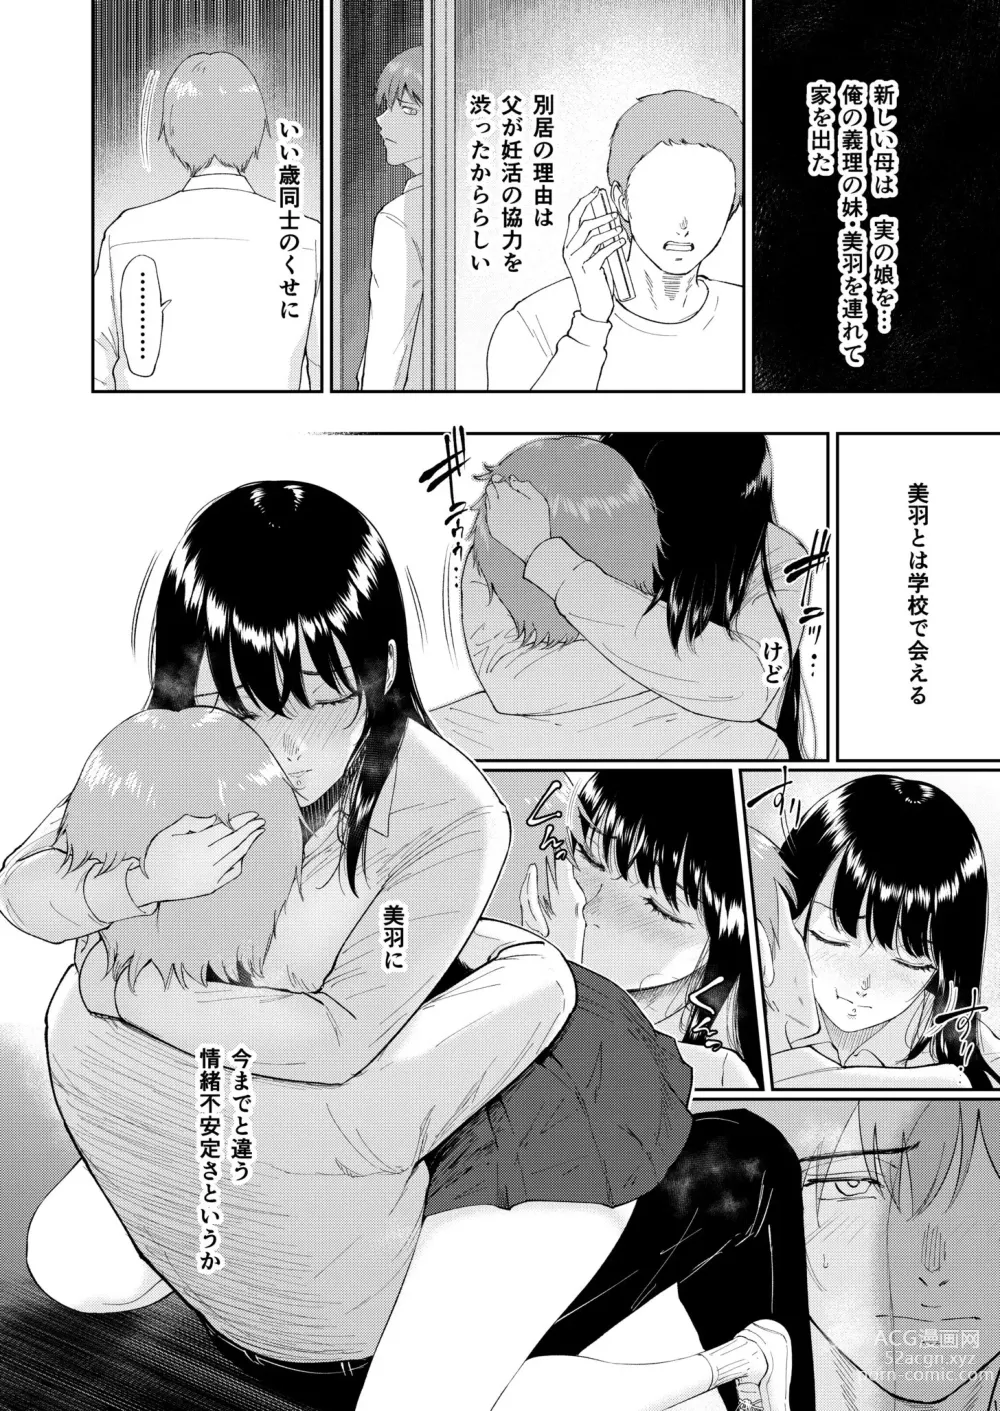 Page 4 of manga Iinarikko 5